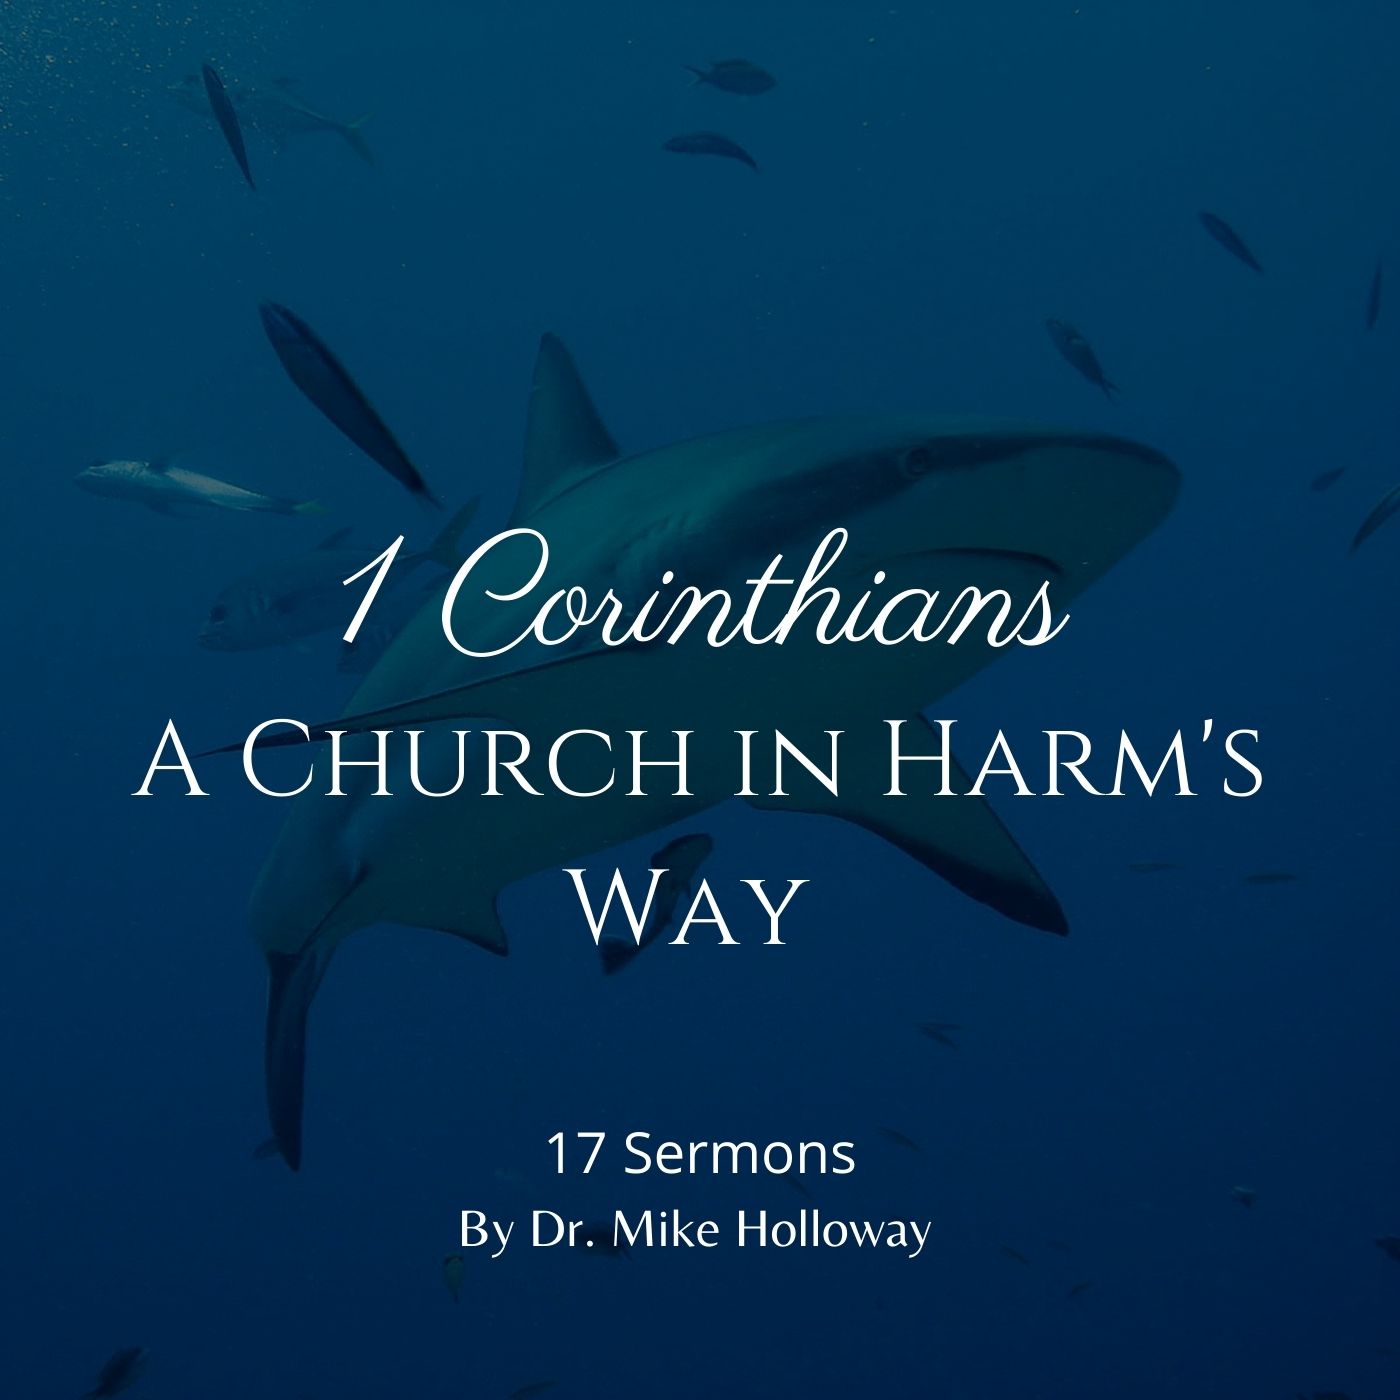 1 Corinthians – A Church in Harm’s Way